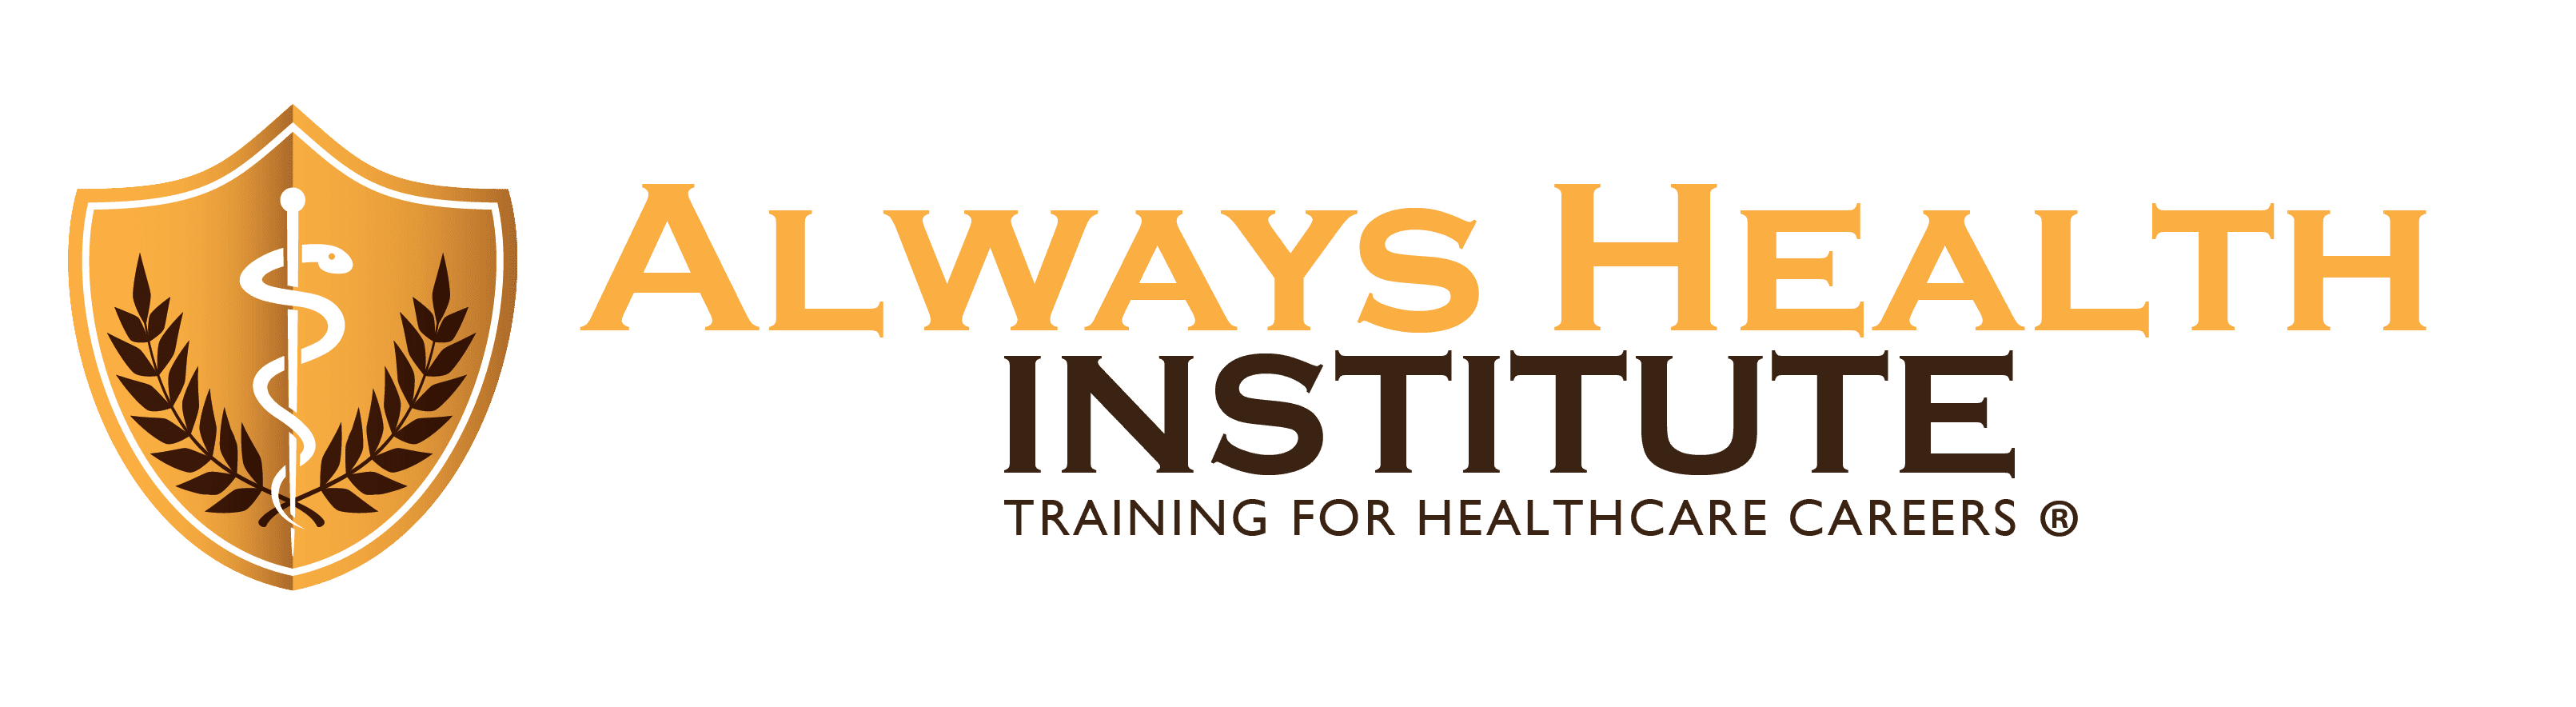 Always Health Institute